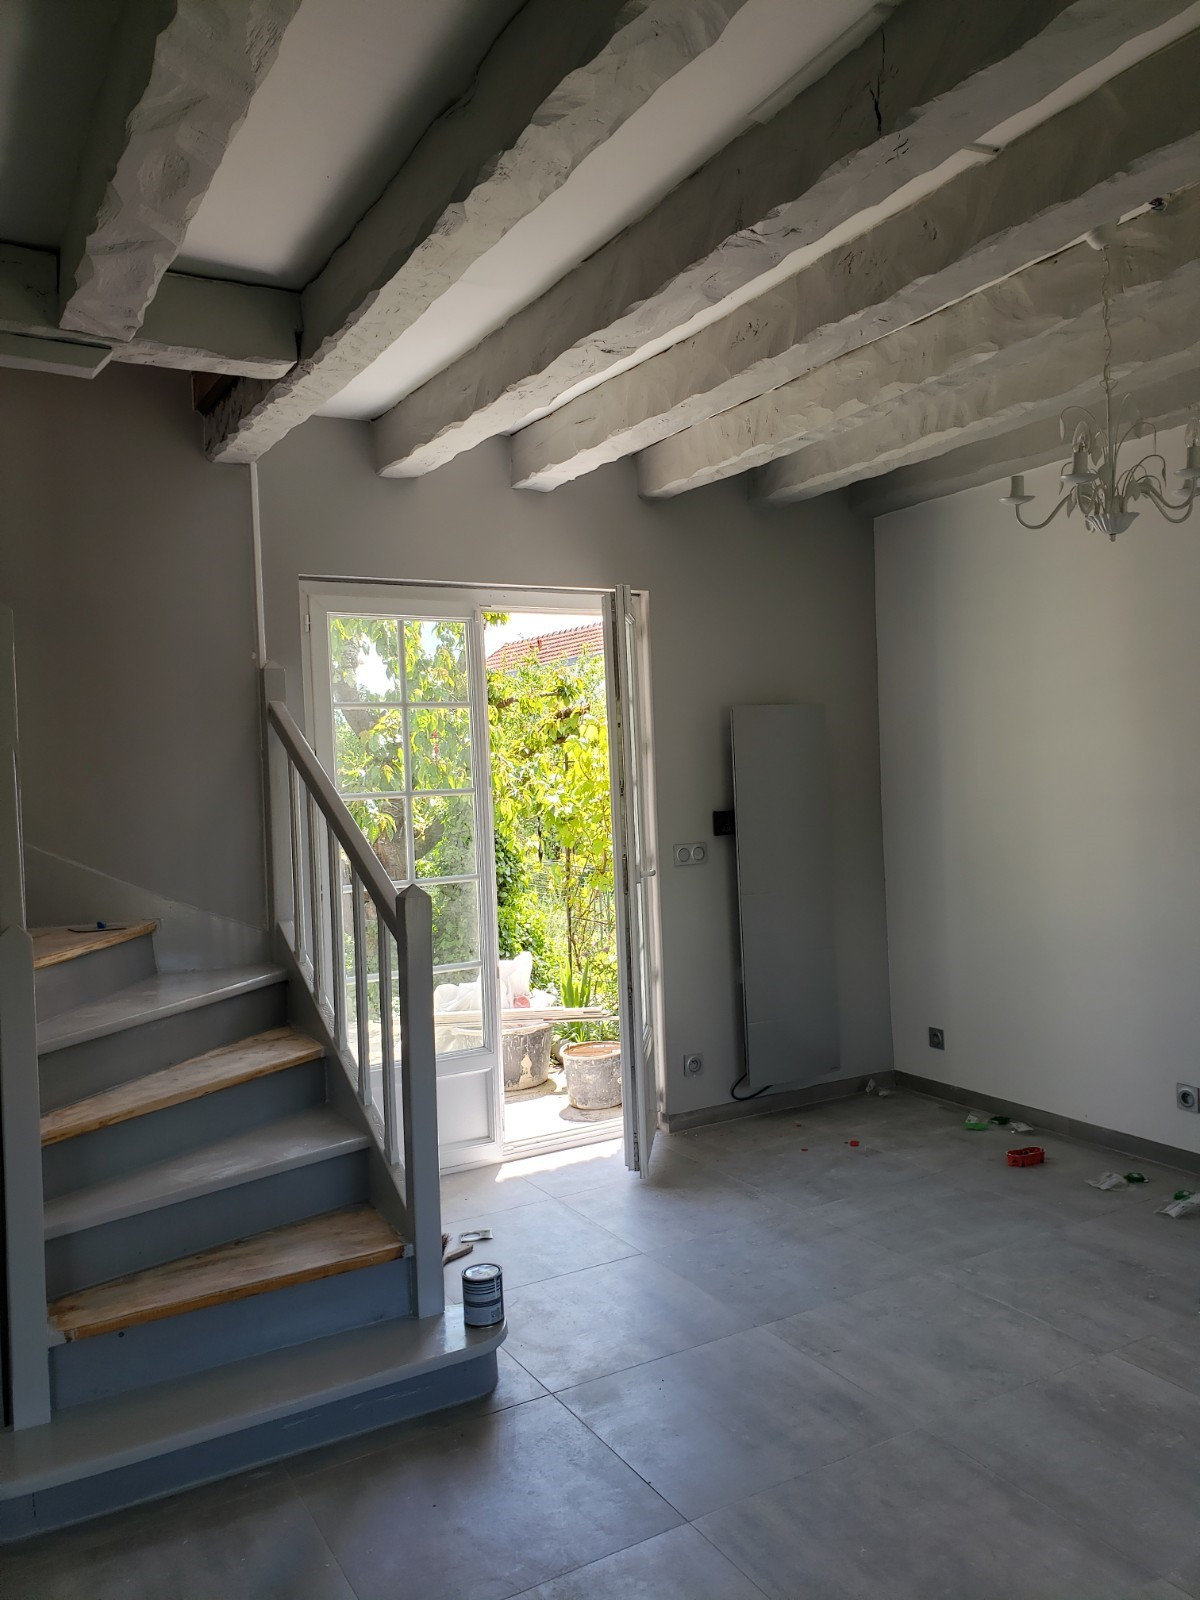 Après travaux - Poutres et escalier peints en gris, escalier poncé et peint